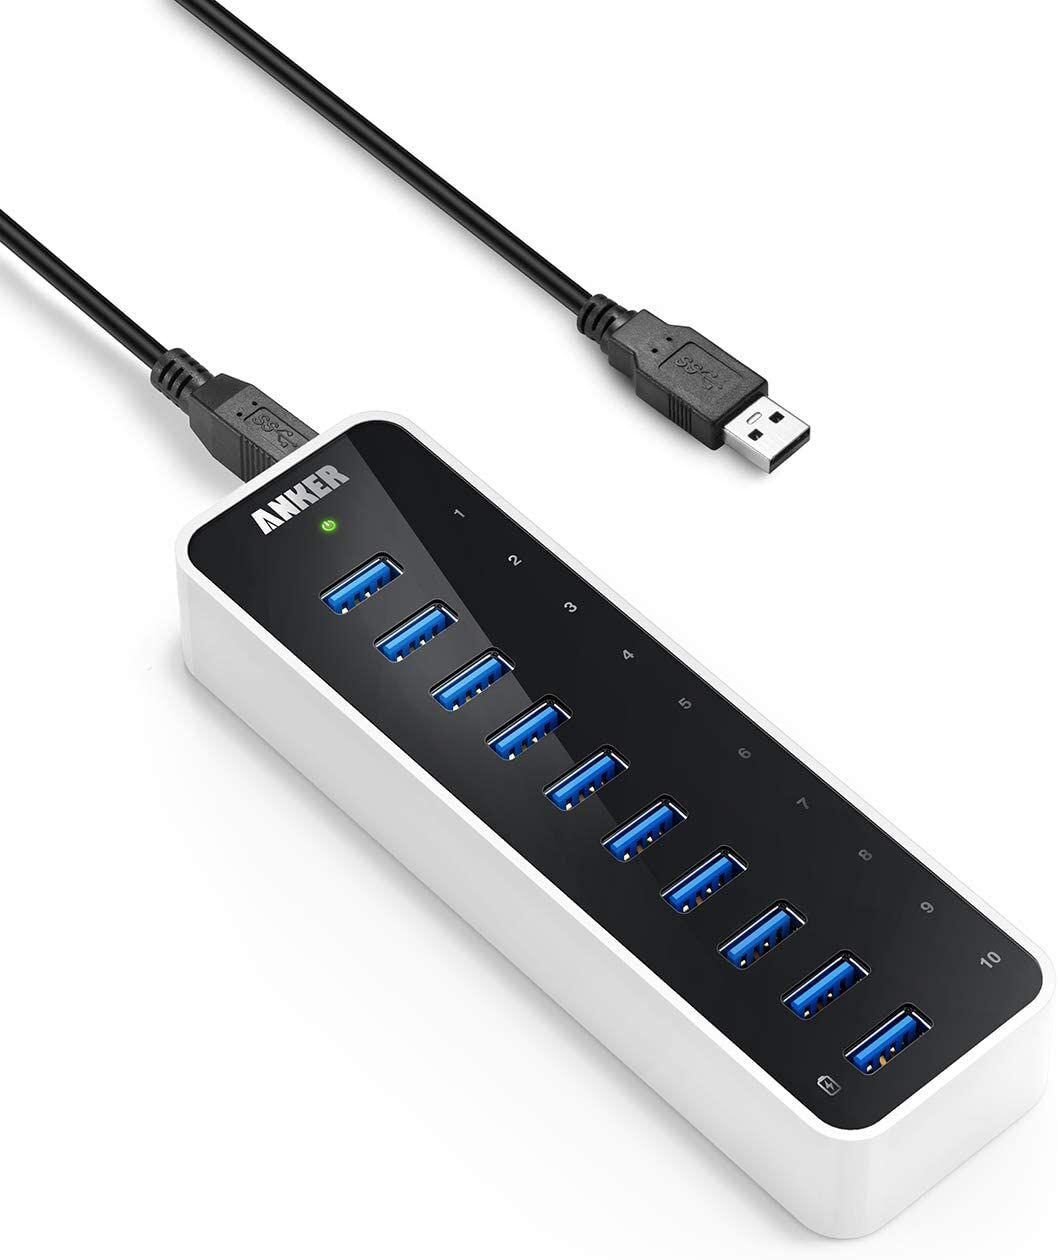 Anker USB 3.0 Super Speed 10-Port USB Hub